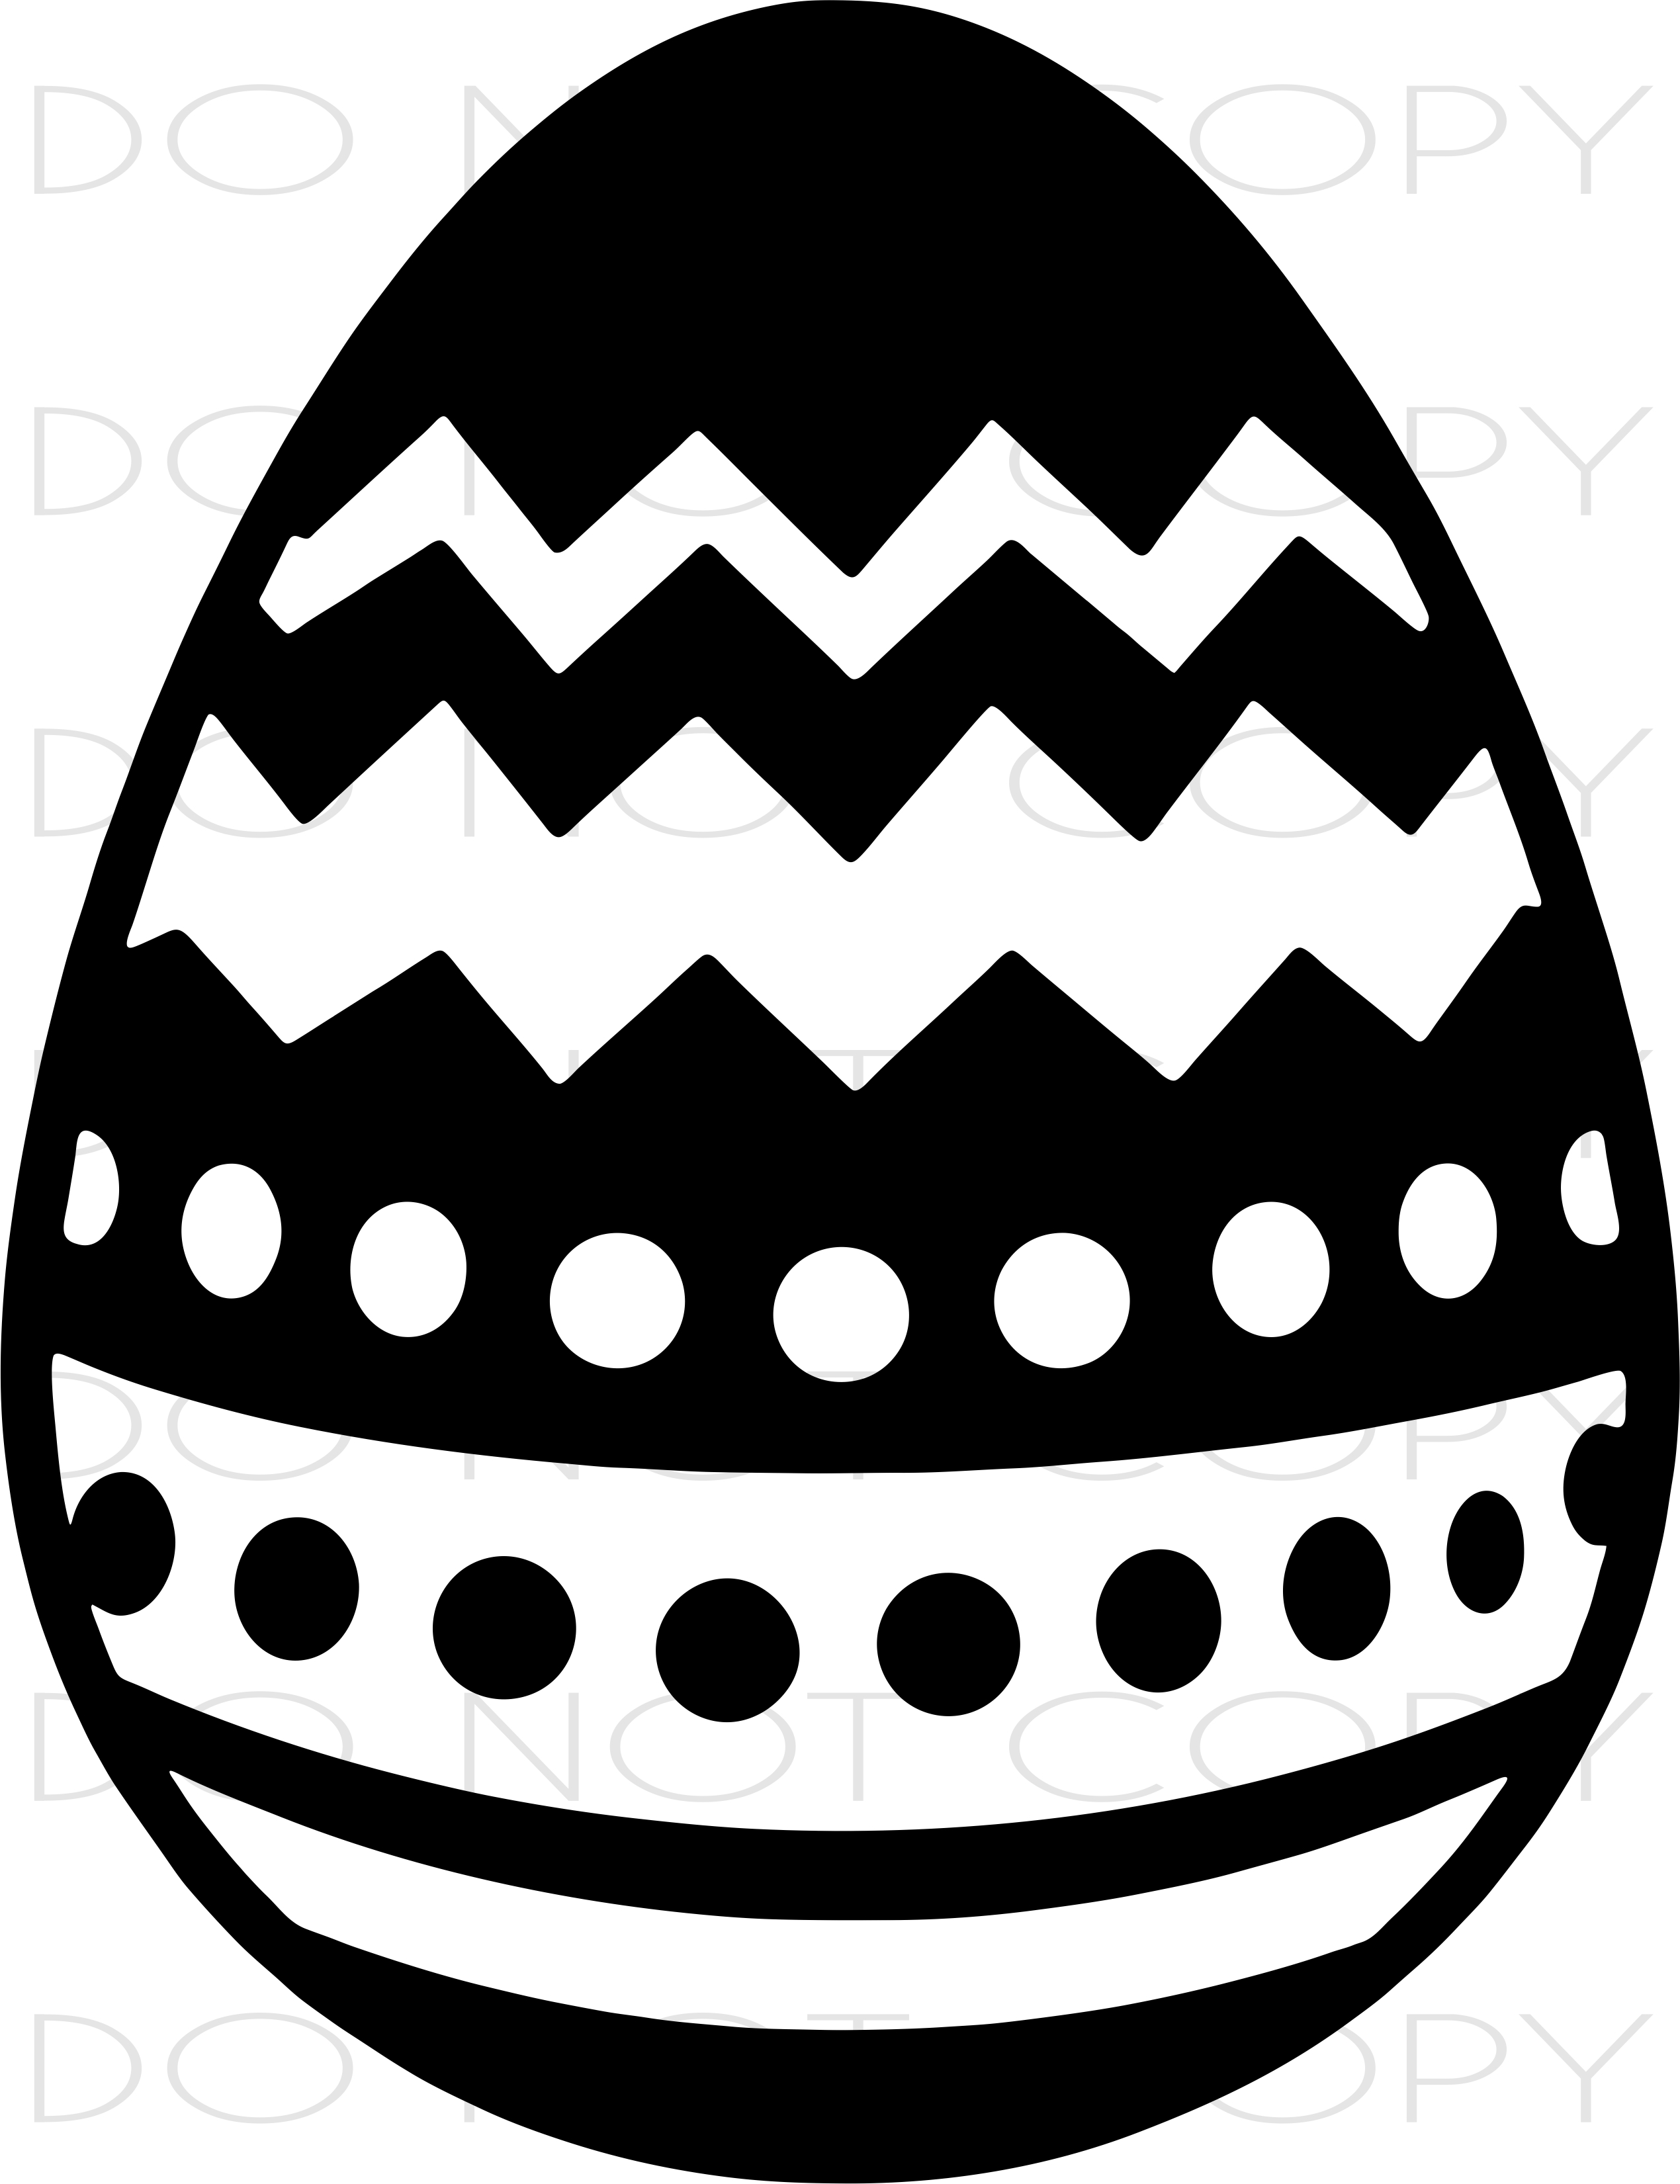 Easter Egg Cut & Print SVG PNG instant digital download at Sewing Divine